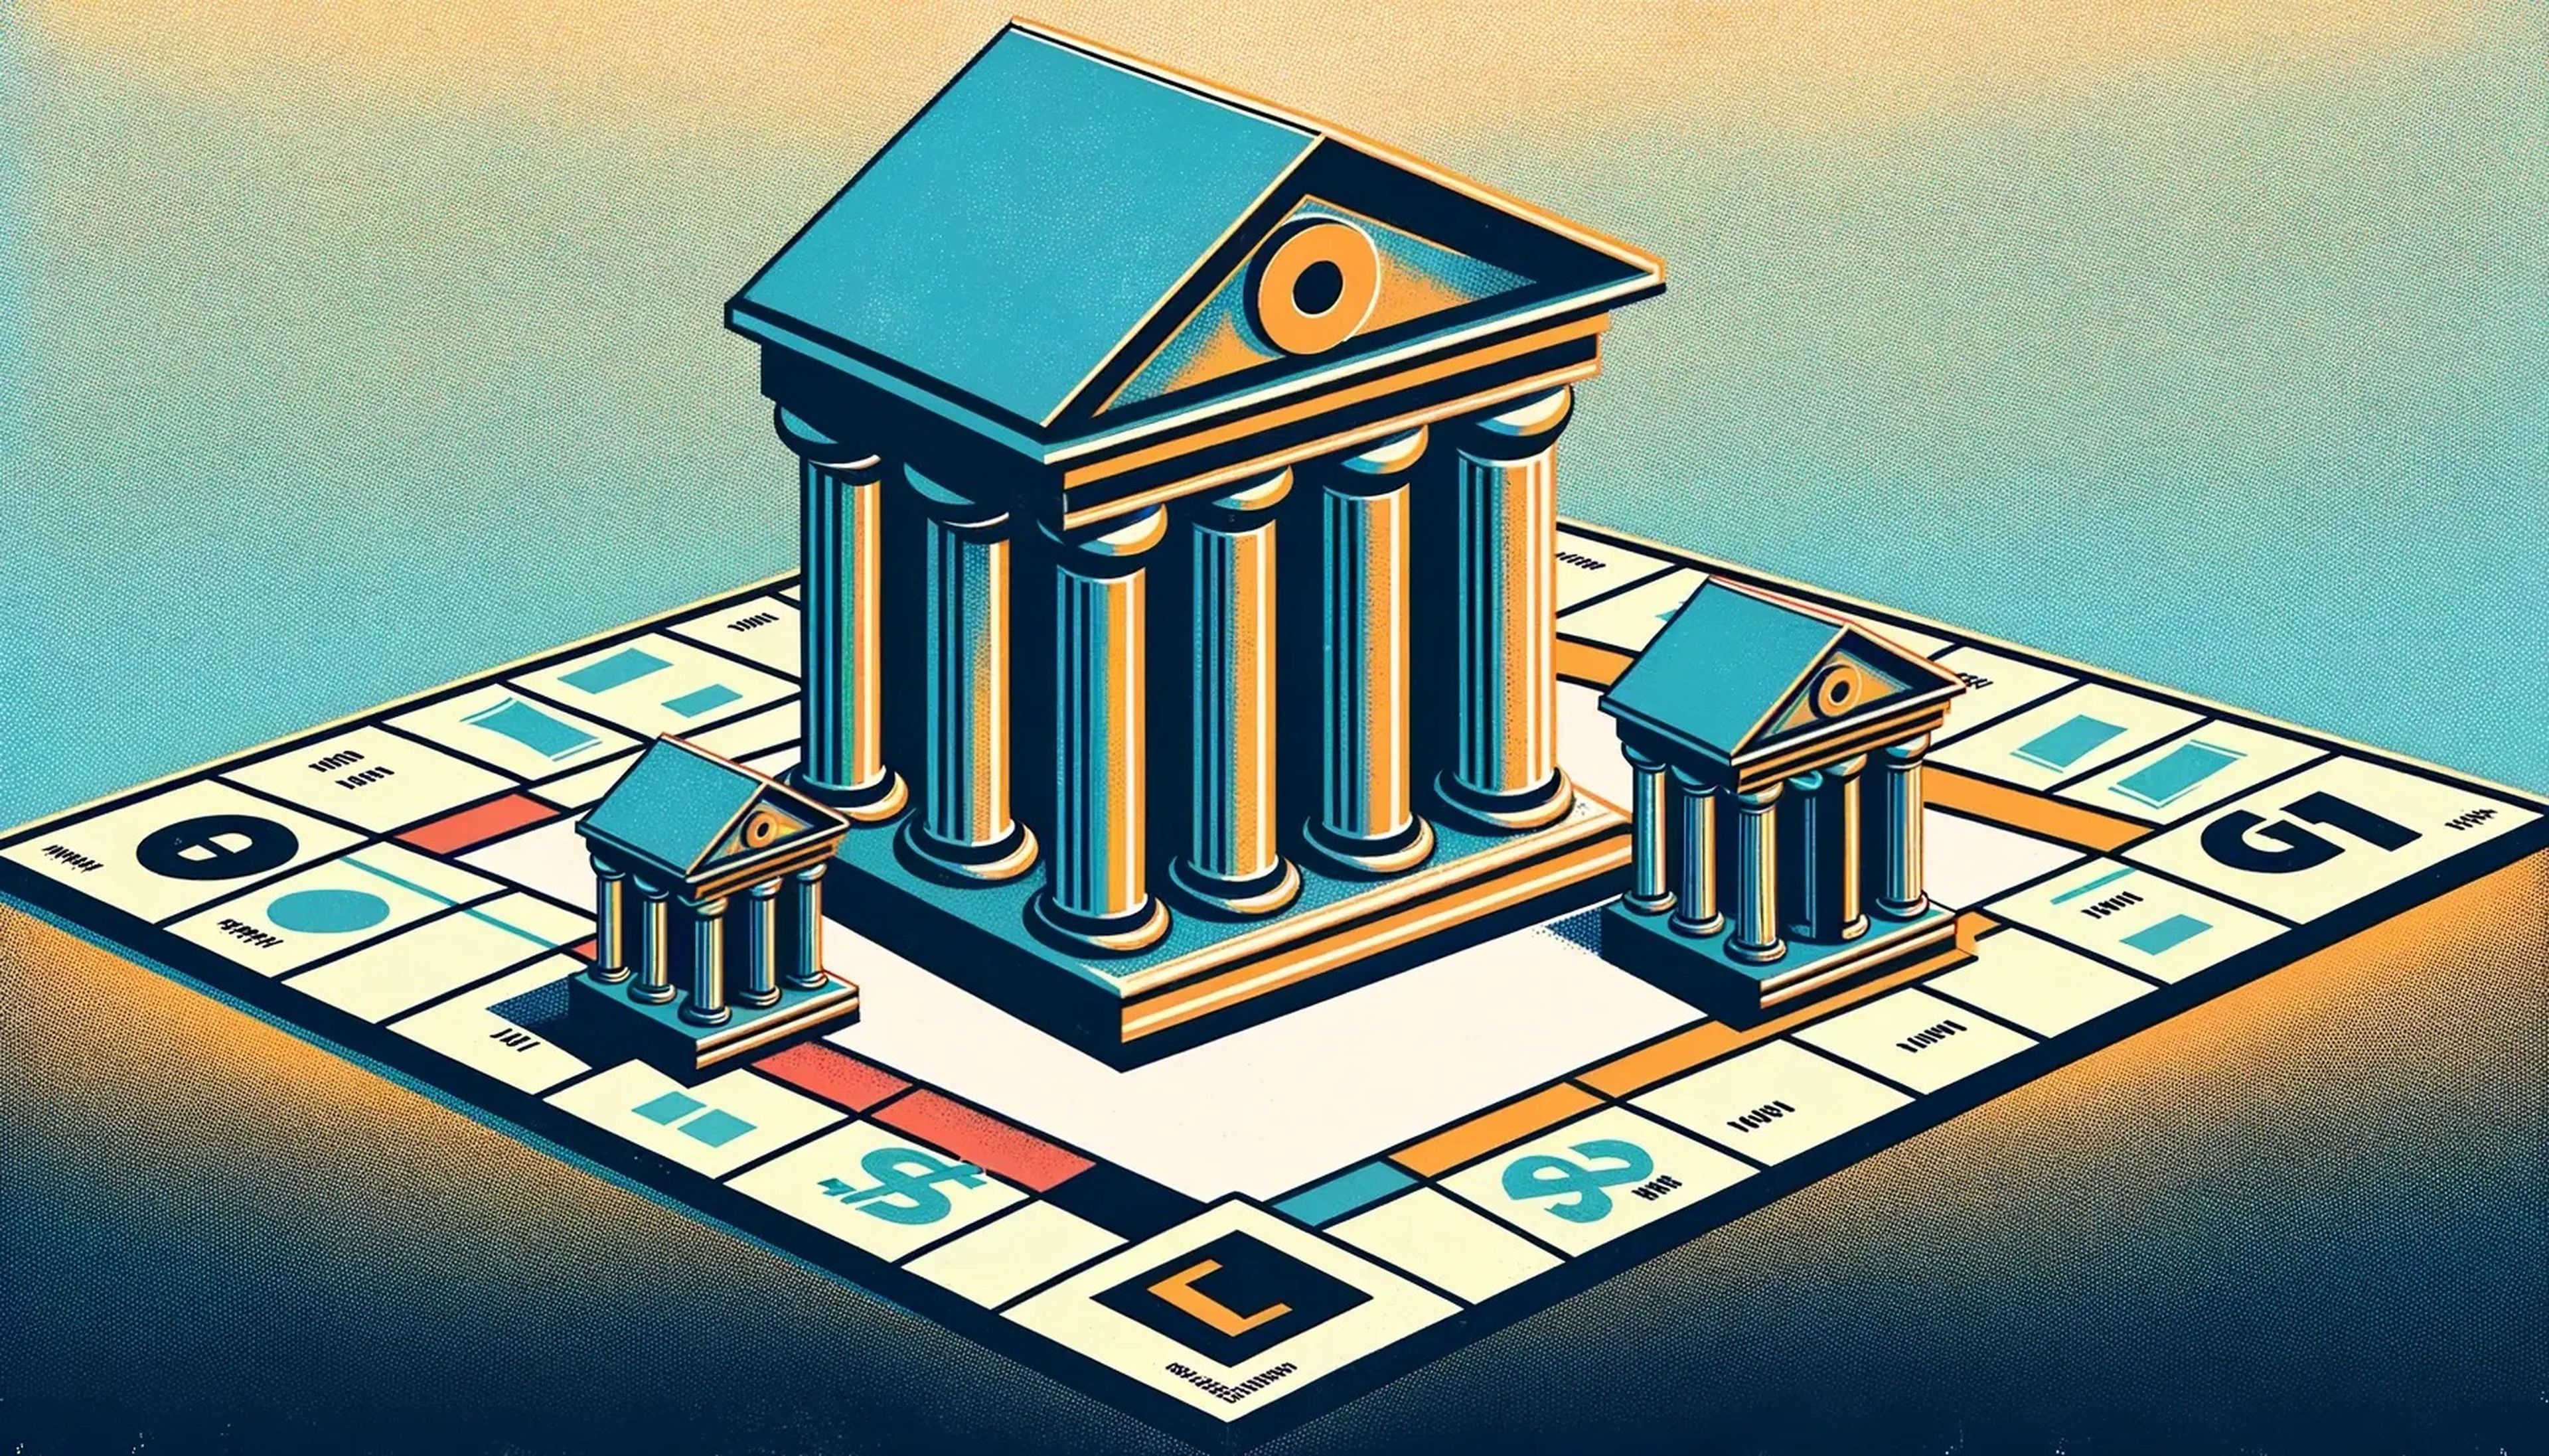 Ilustración de bancos en un tablero de Monopoly